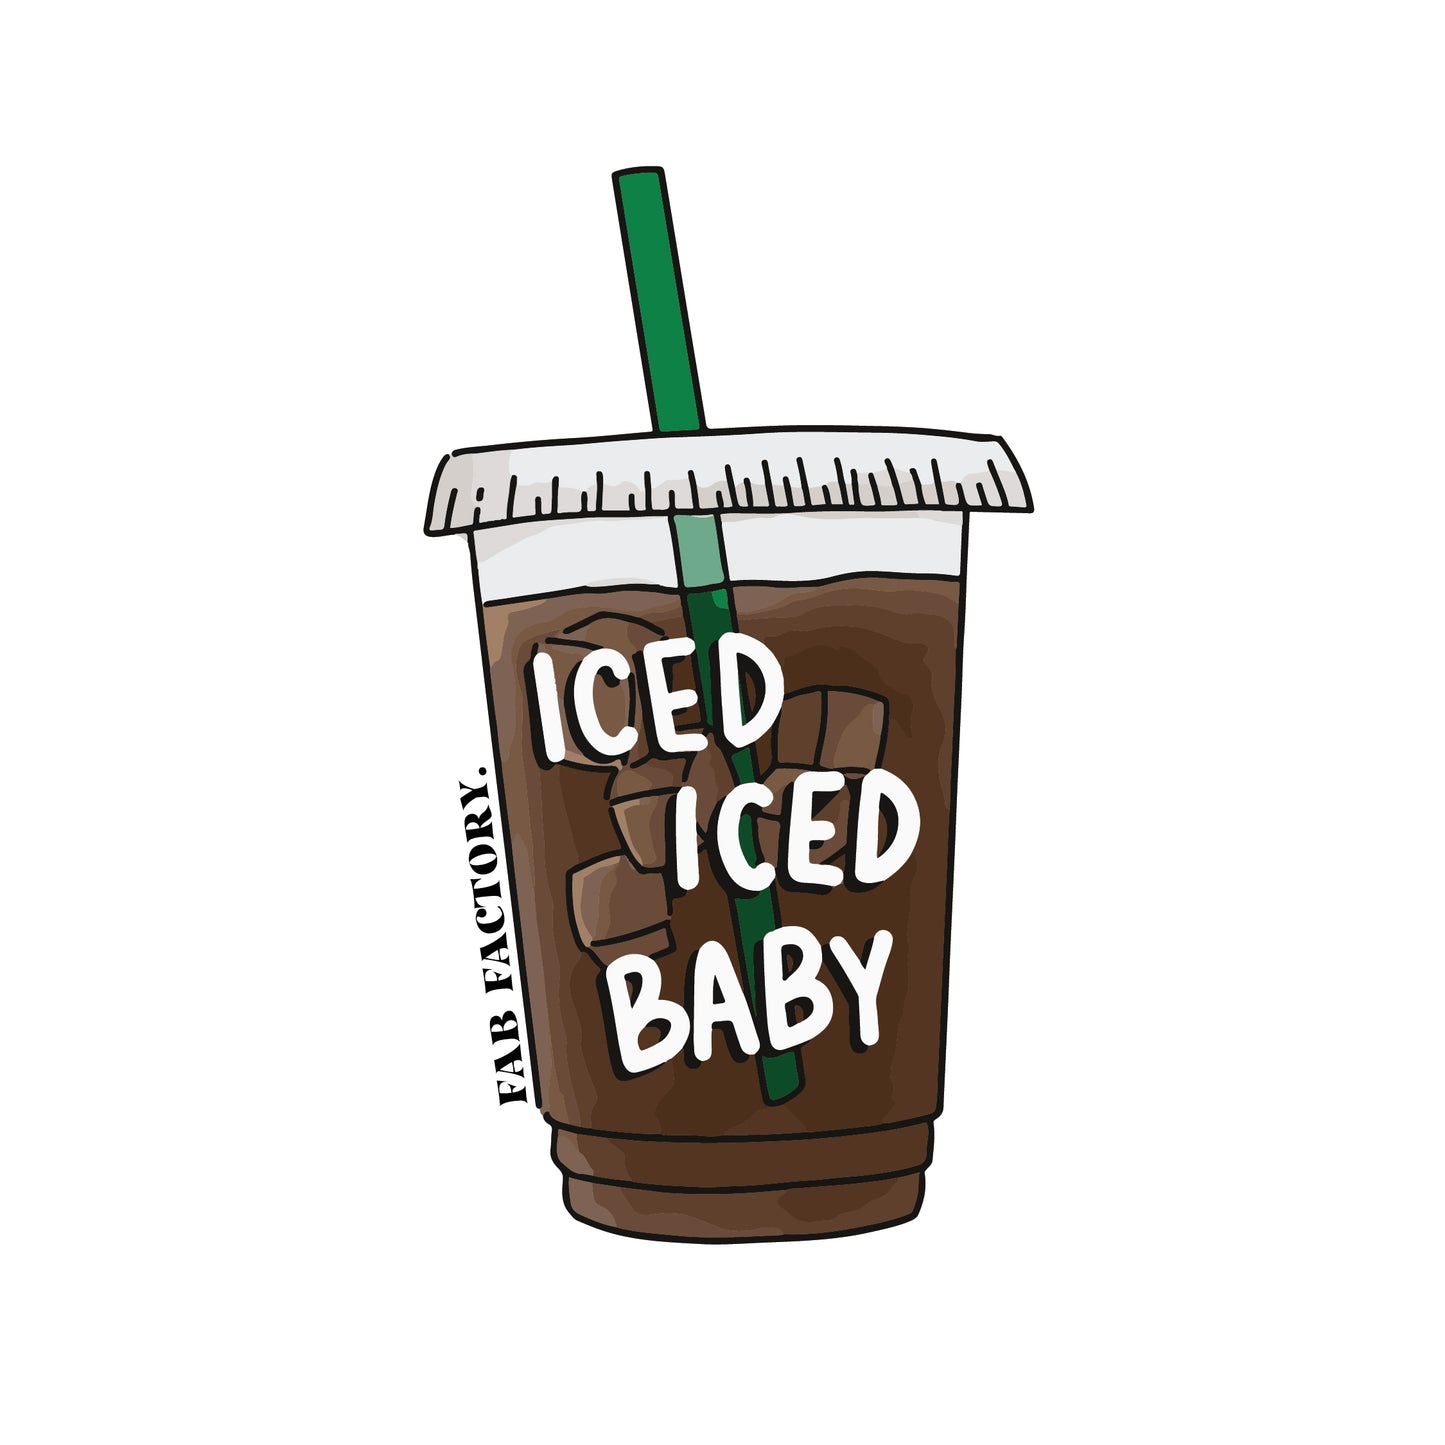 Iced iced baby